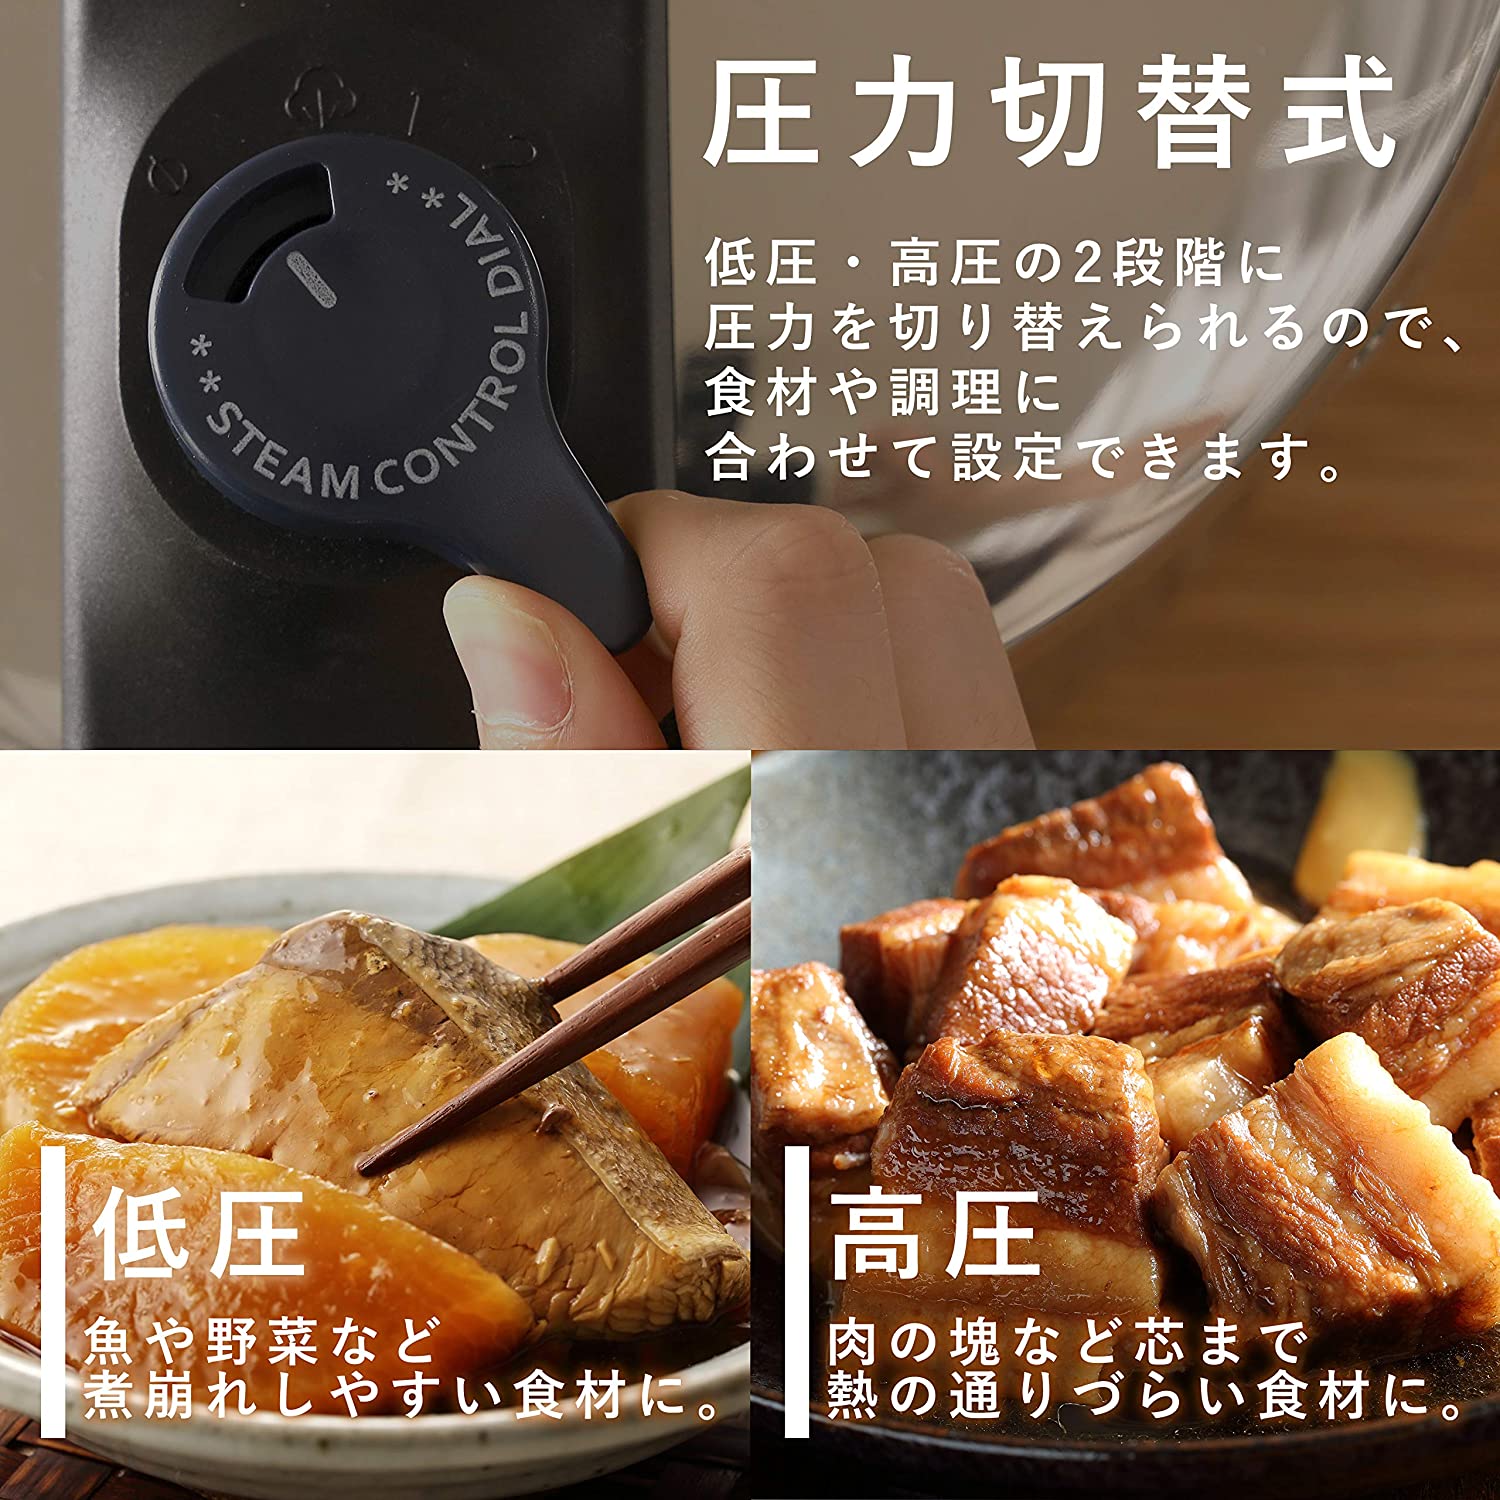 Nồi áp suất dùng bếp từ Quick Eco (4.5L &amp; 5.5L) hàng nội địa Nhật Bản - hàng chính hãng